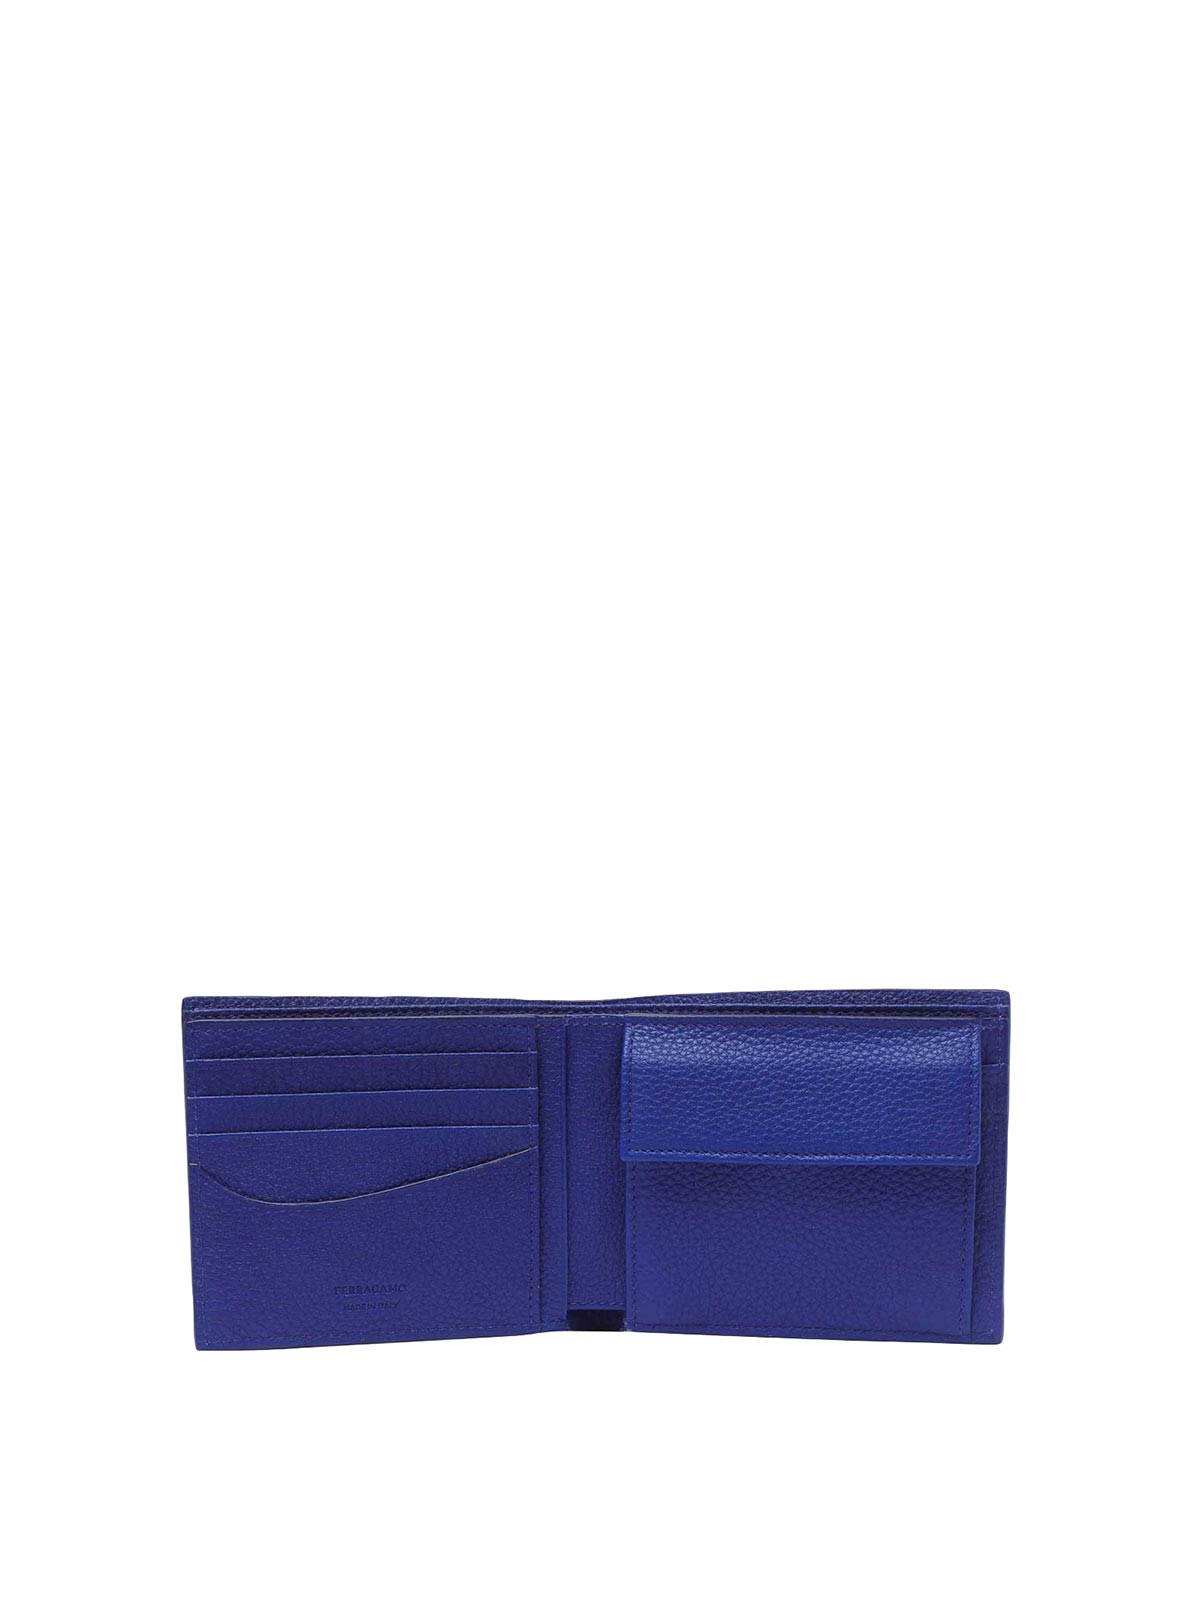 Shop Ferragamo Brown And Blue Cut Out Wallet